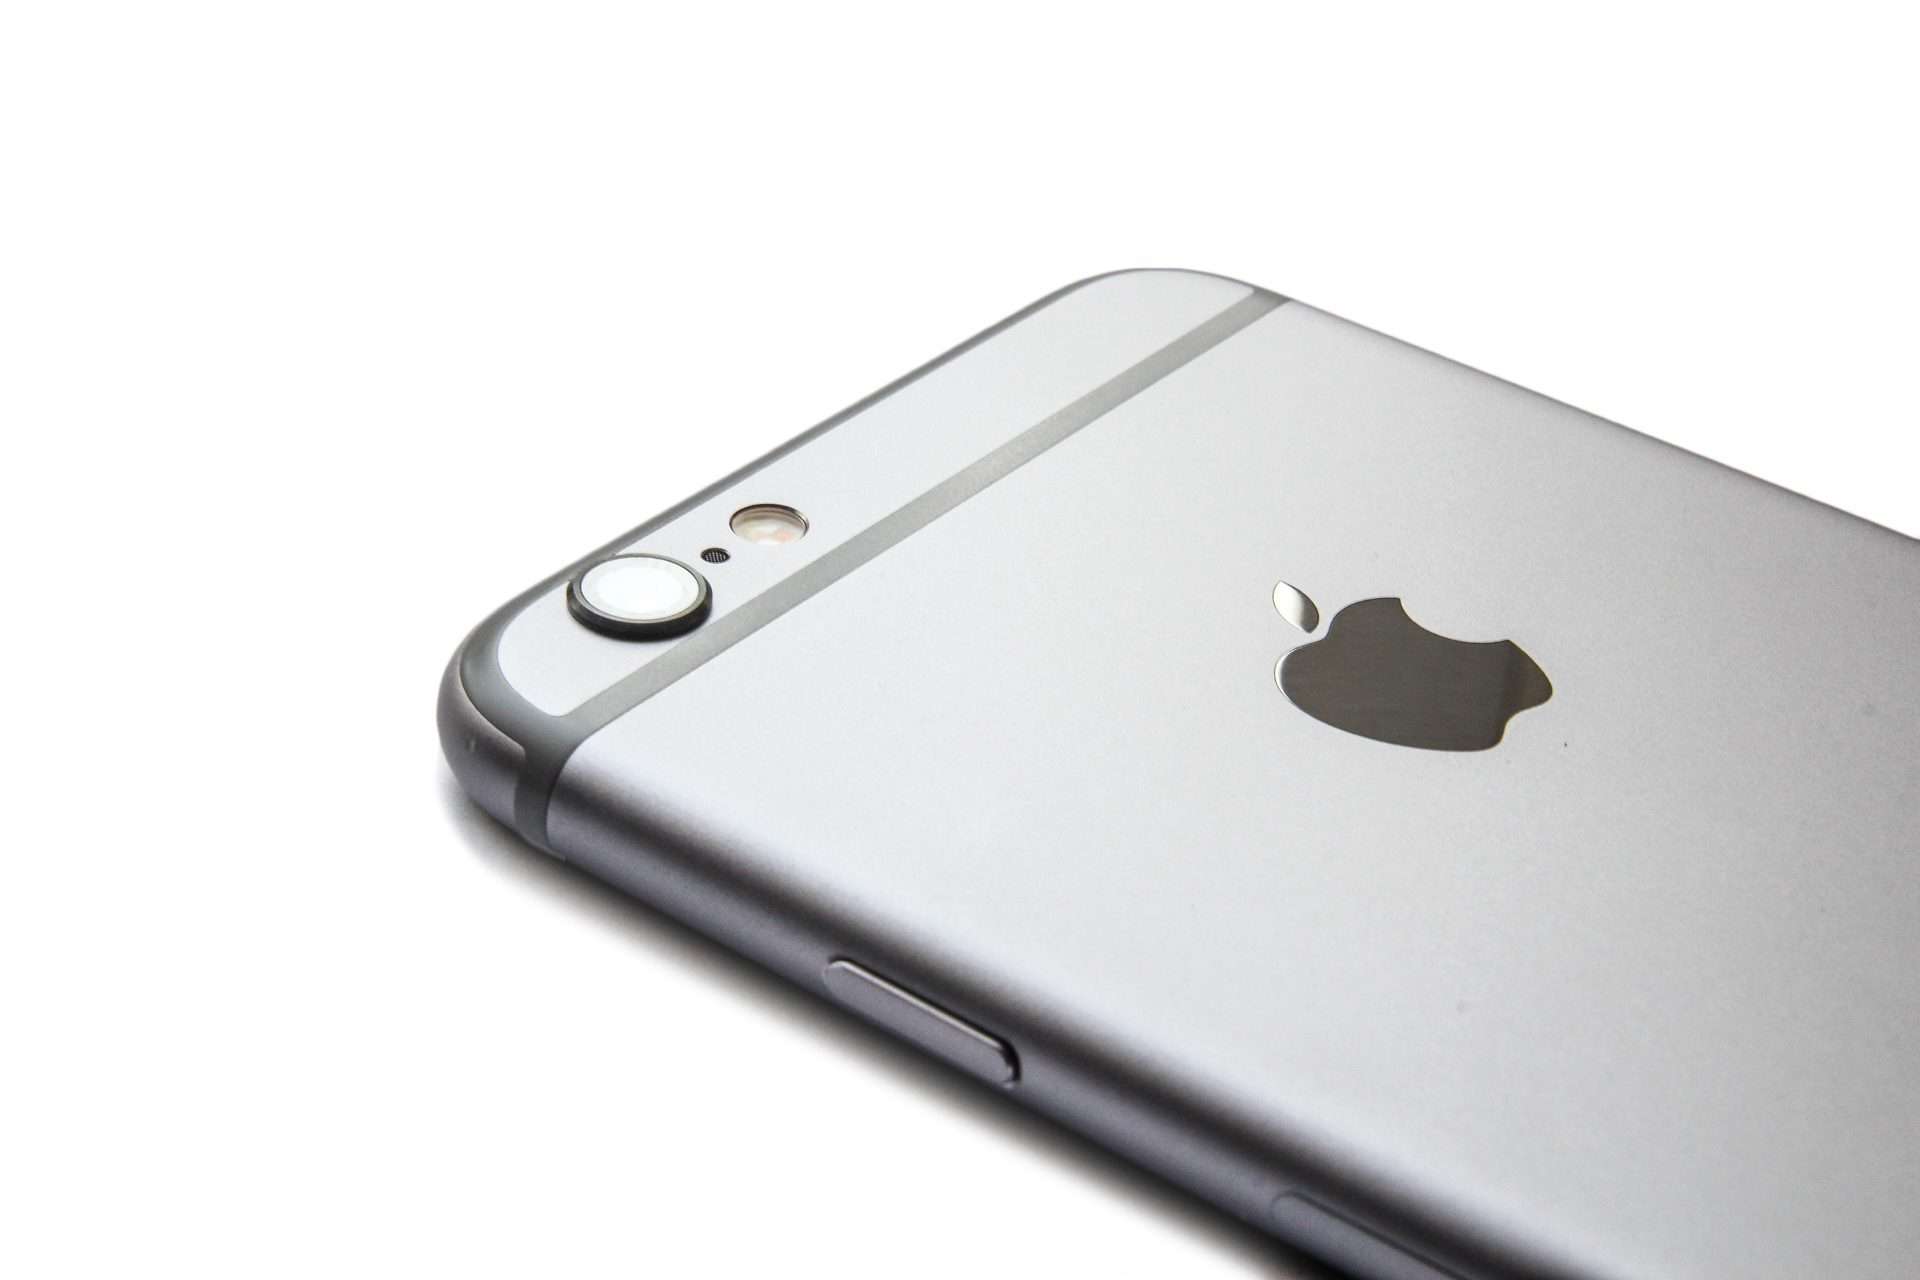 Vijf slachtoffers wijk iPhone 6 kopen met abonnement, prijzen en aanbiedingen vergelijken